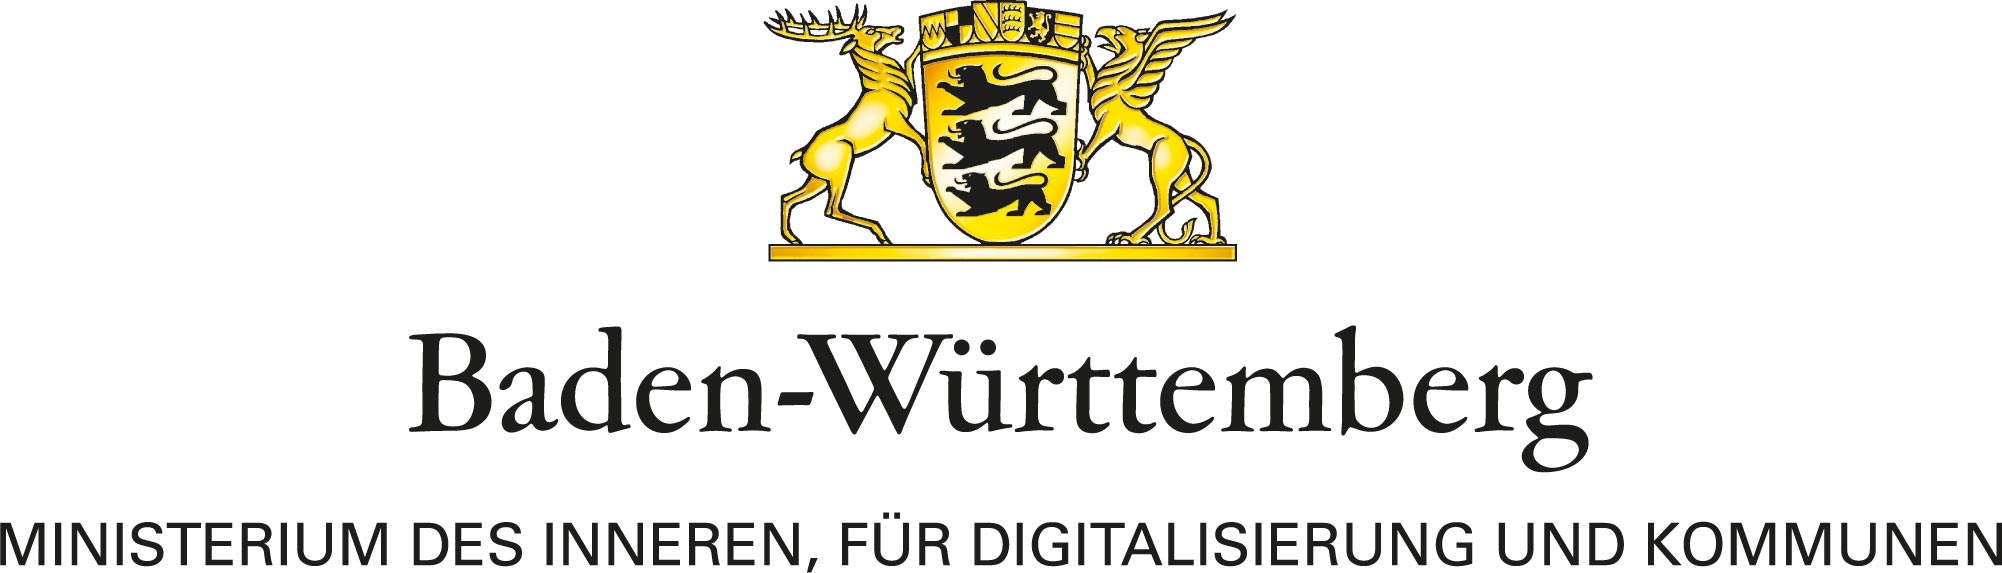 Logo des Ministerium des Inneren, für Digitalisierung und Kommunen mit goldenen Löwen